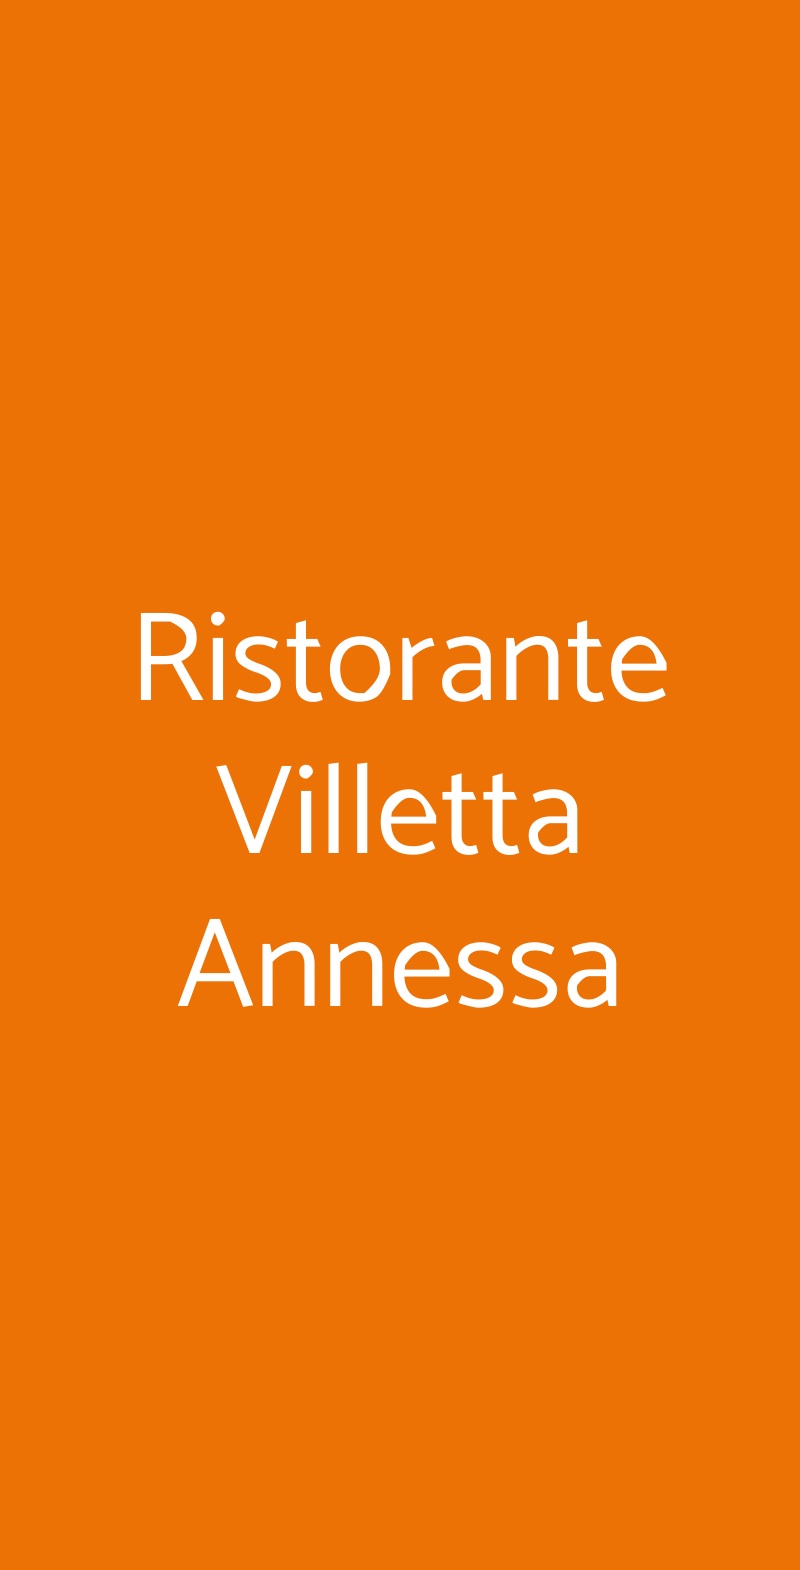 Ristorante Villetta Annessa Riva Del Garda menù 1 pagina